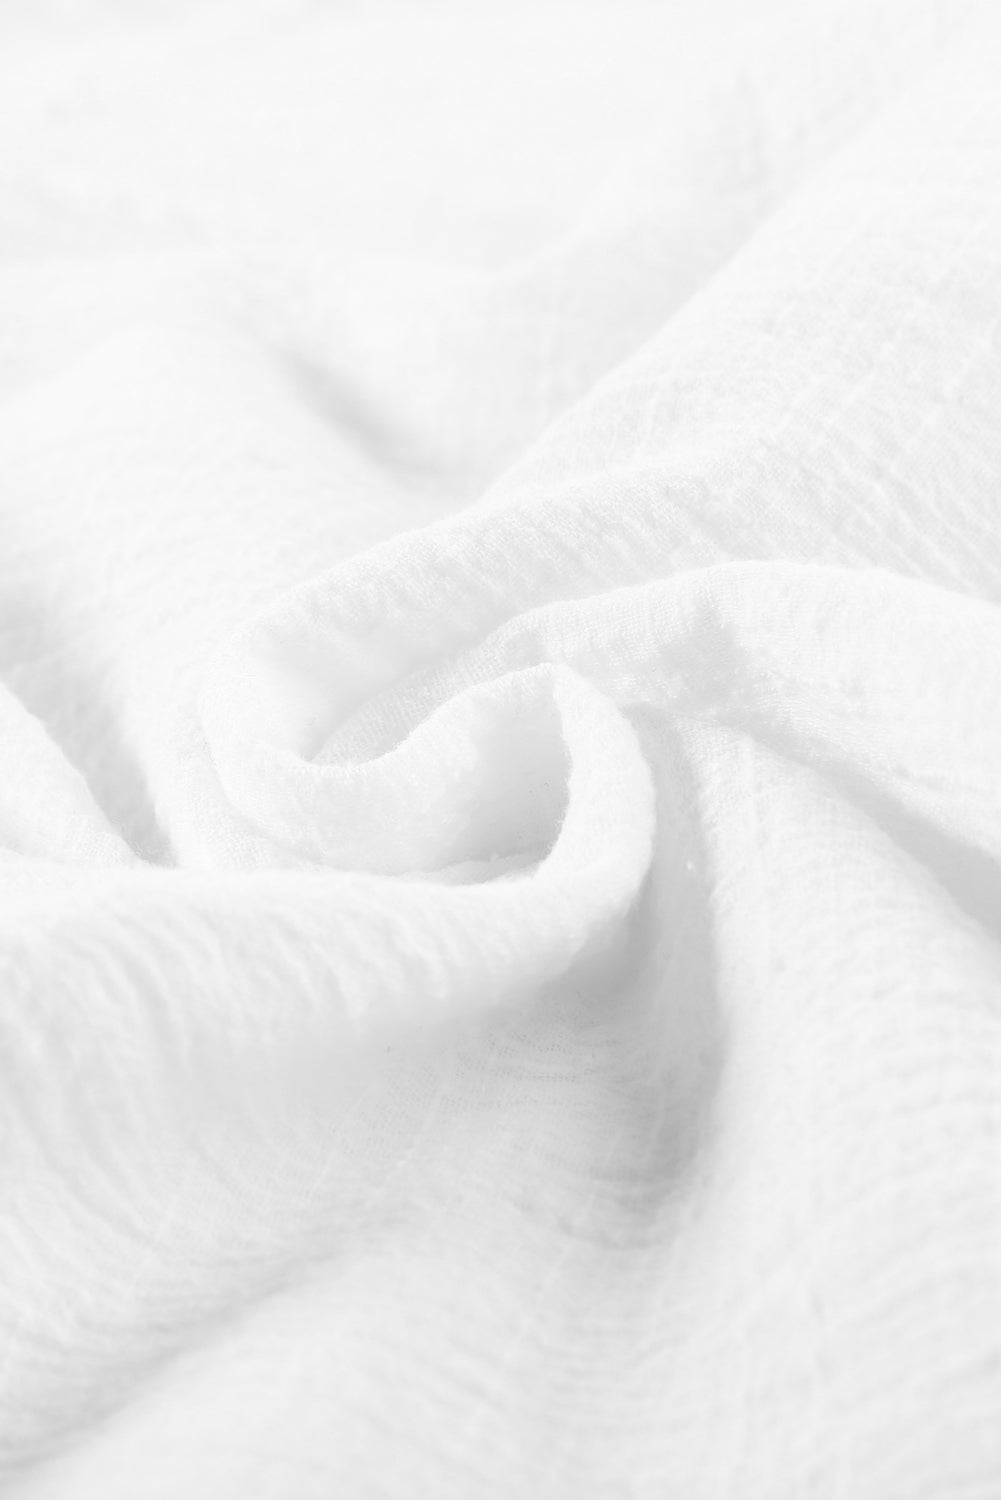 Chemise basique blanche texturée de couleur unie